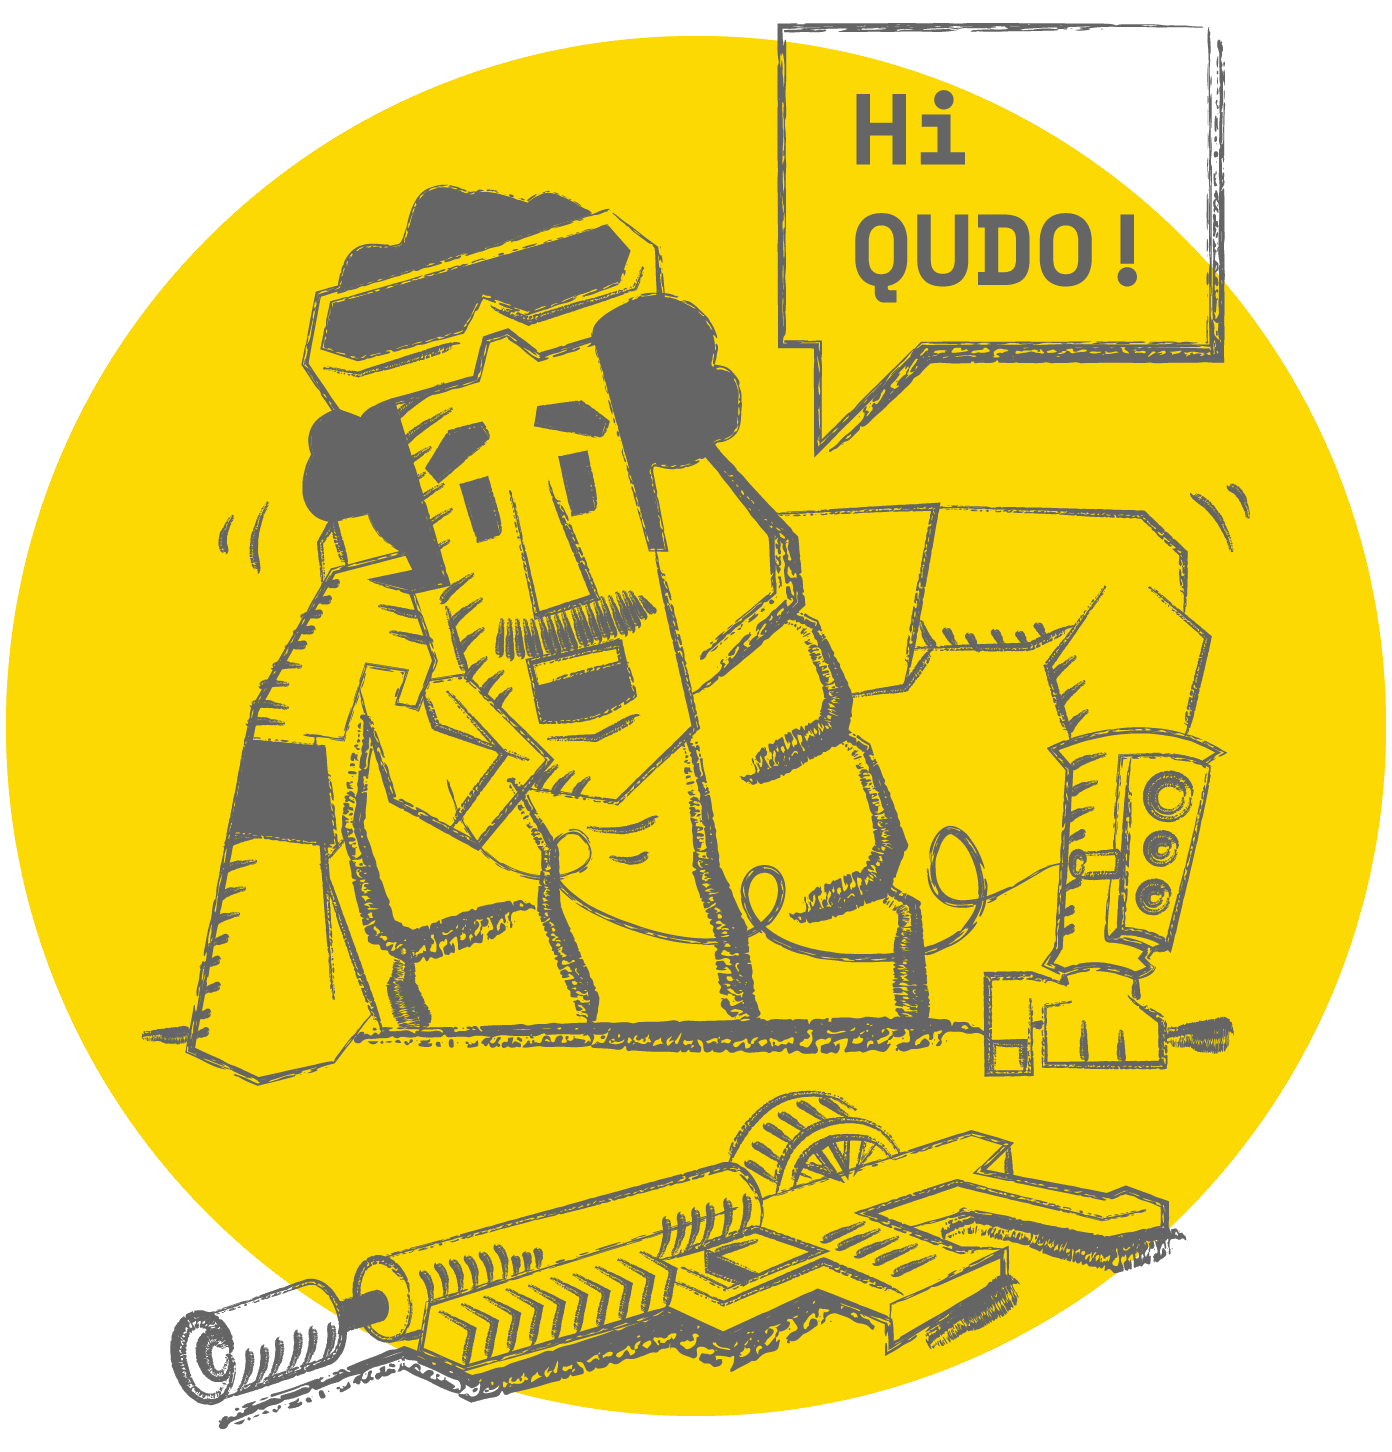 QUDO - Contact QUDO